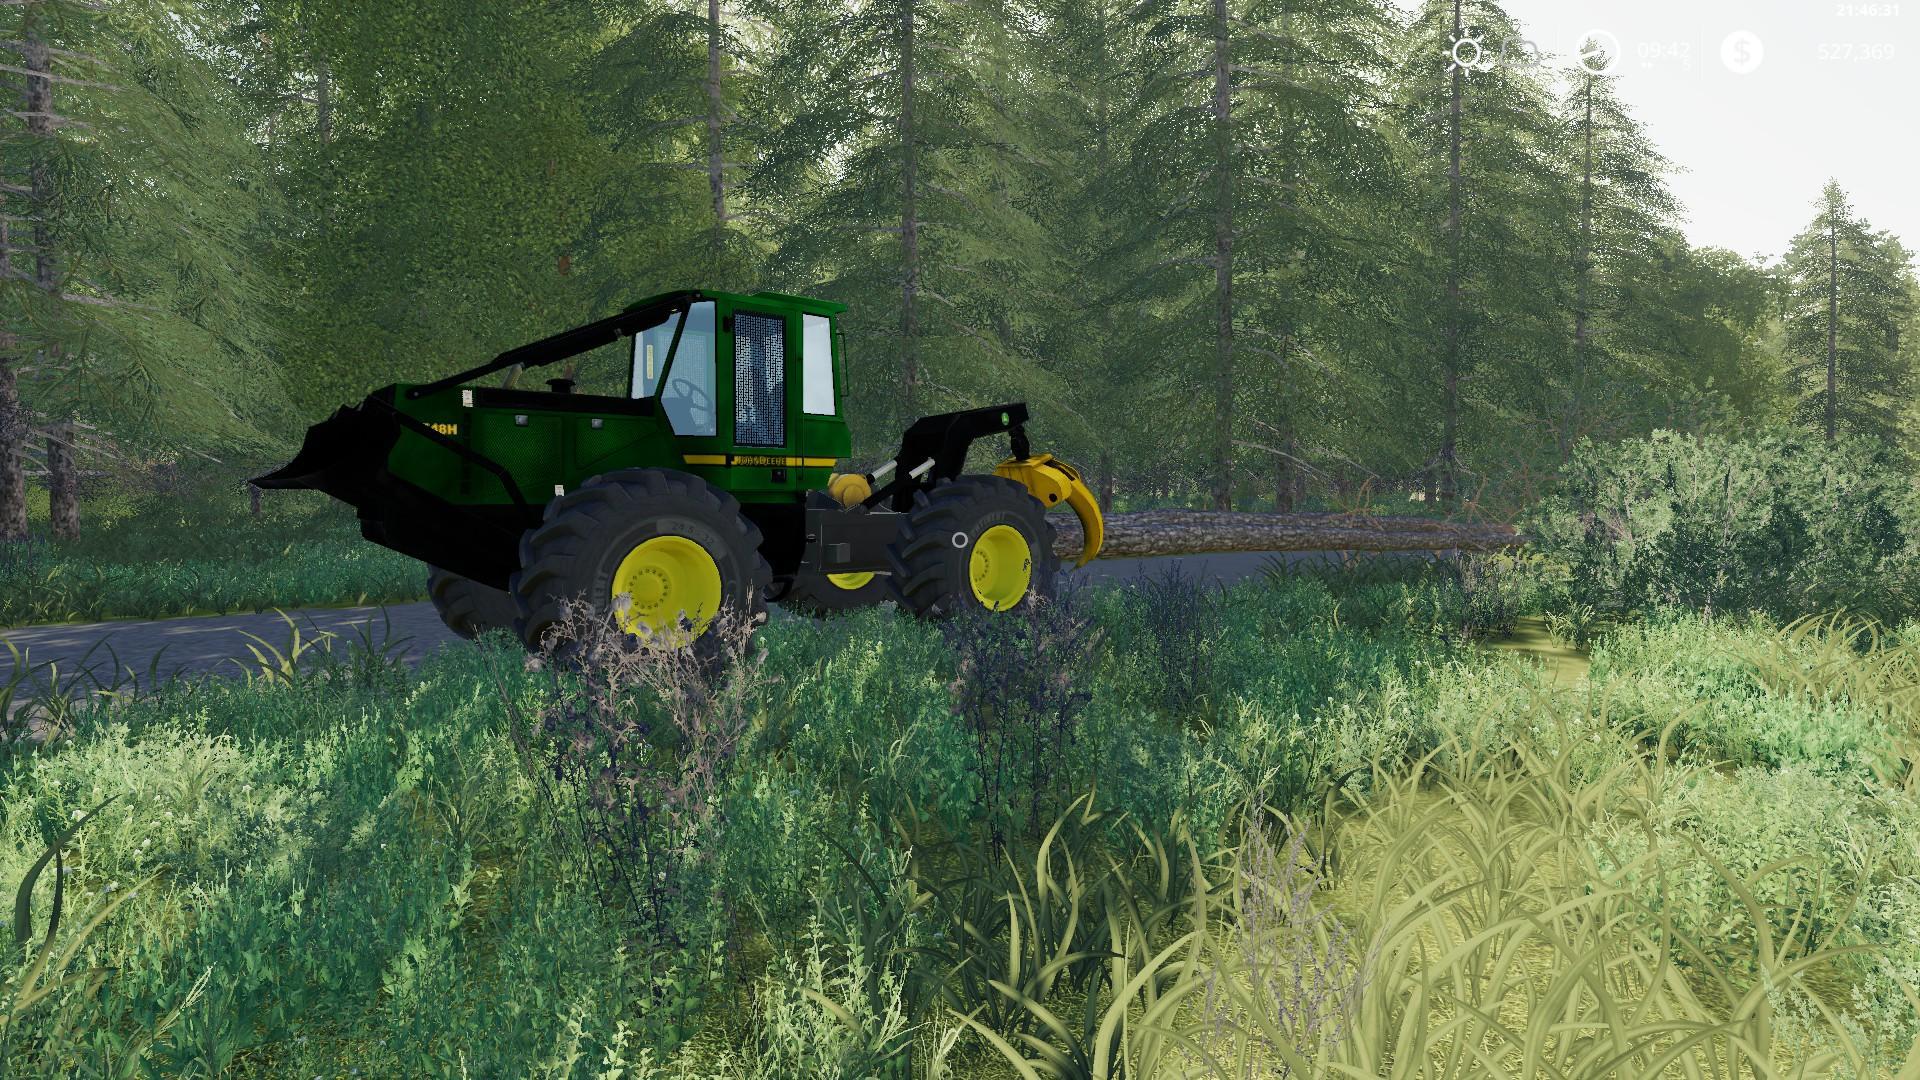 John Deere skidder v1.1 FS19. Farming Simulator 19 Mod